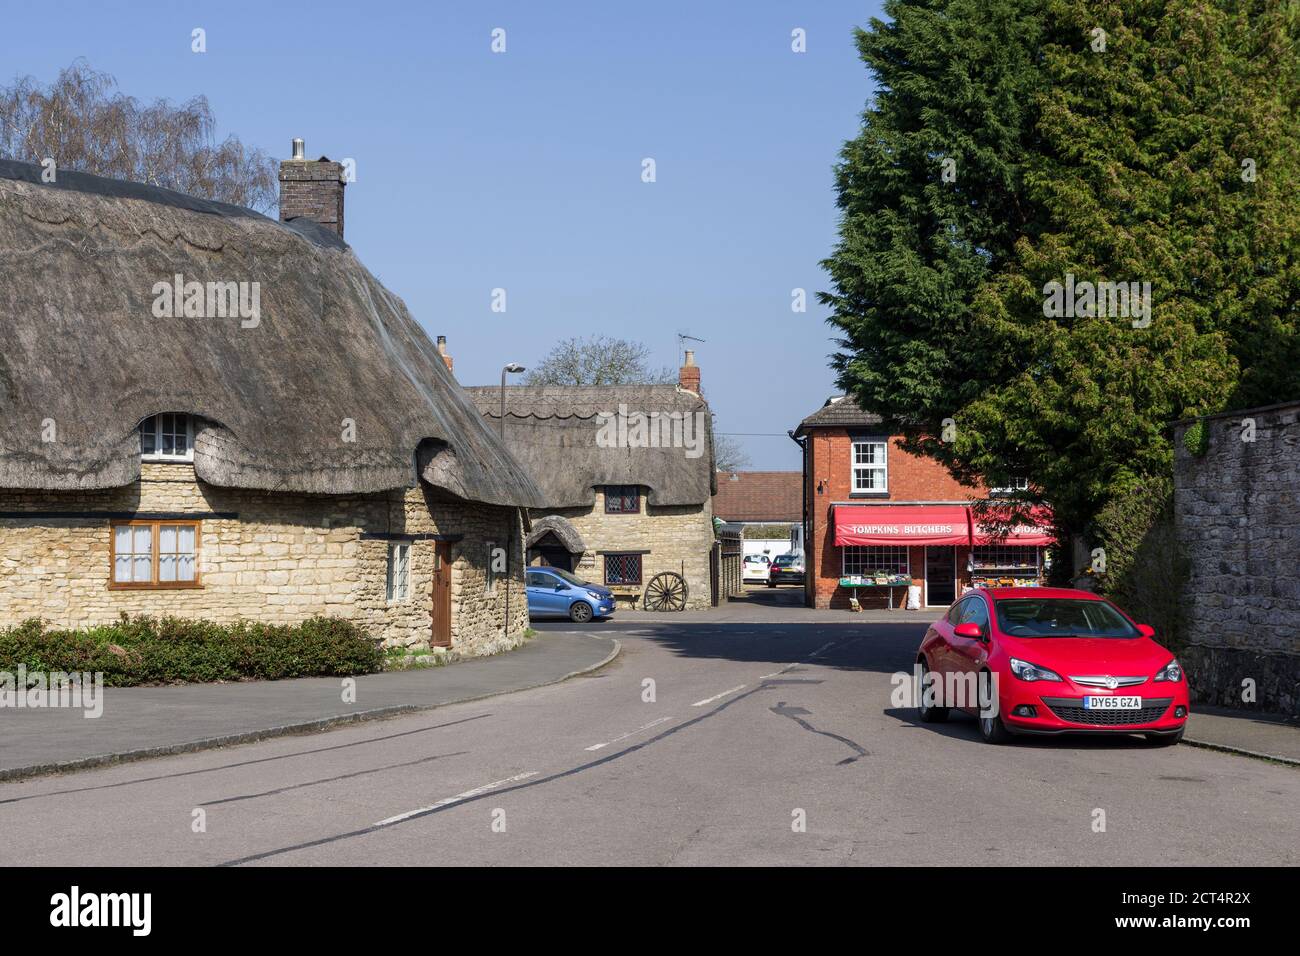 Scena di strada, Piazza del mercato nel villaggio di Hanslope, Buckinghamshire, Regno Unito Foto Stock